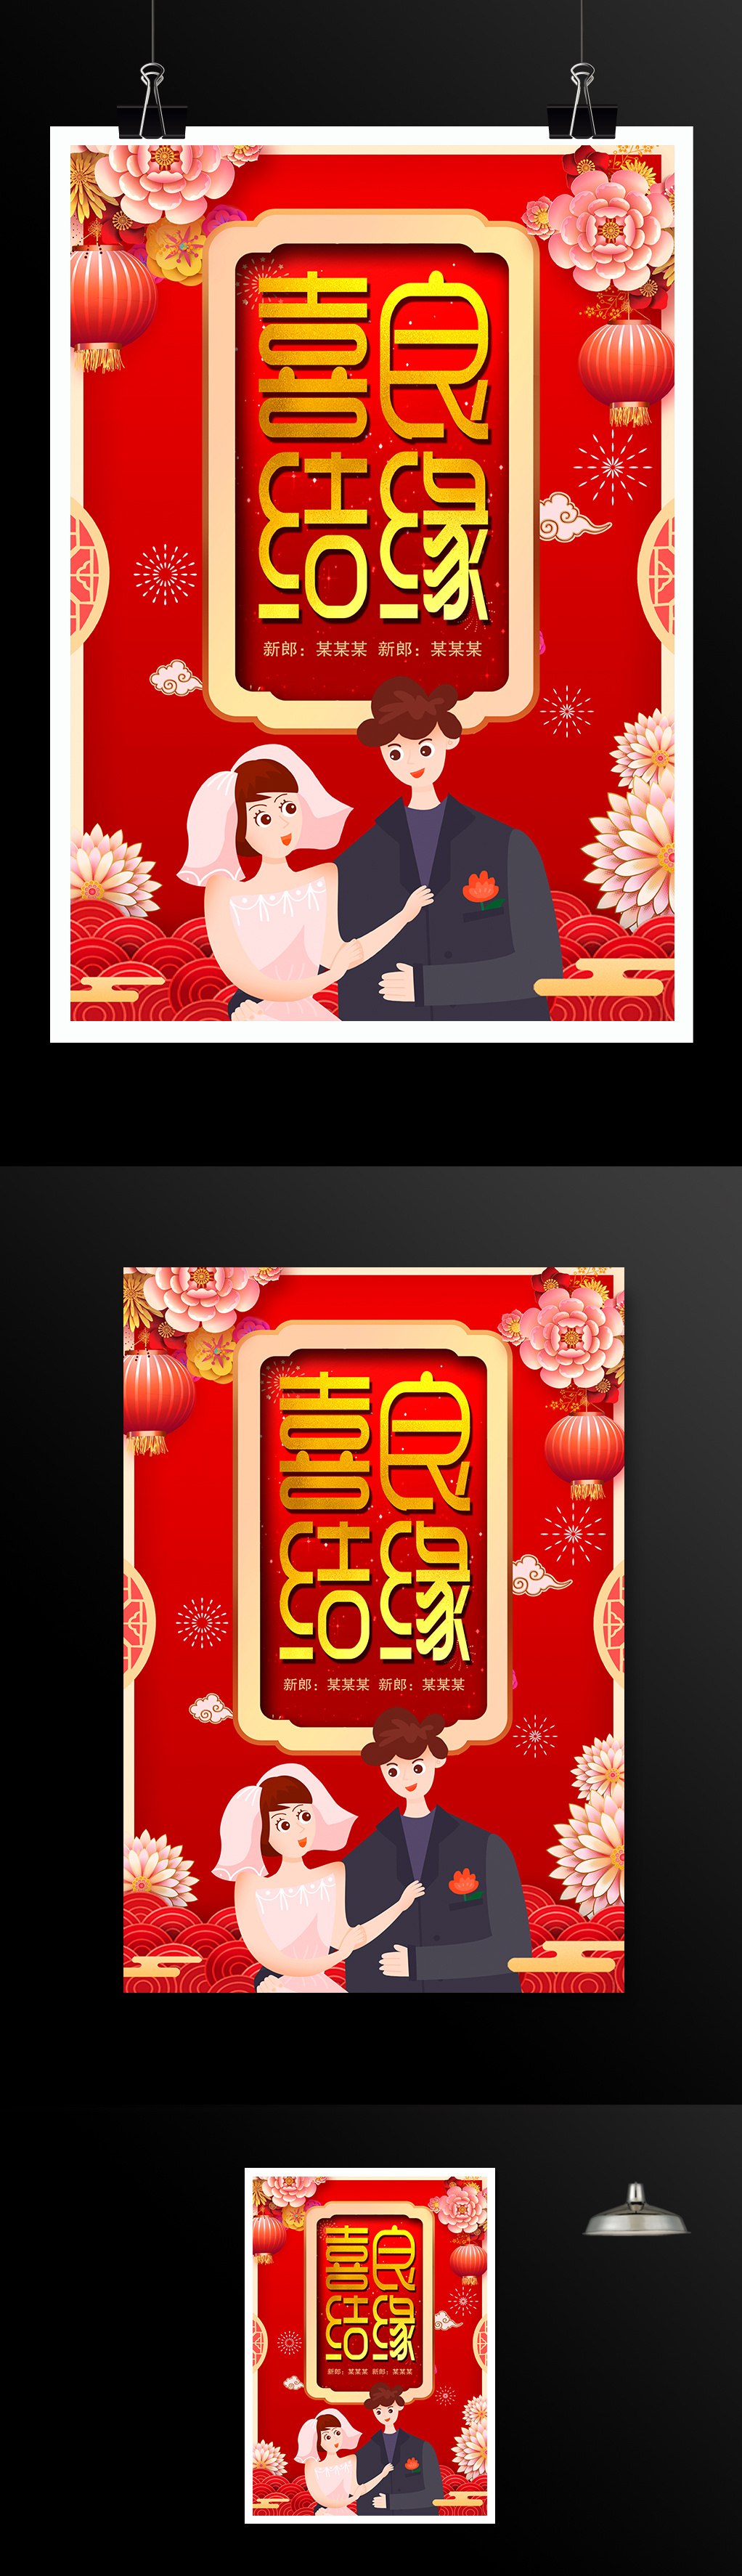 红色中国风传统婚礼喜结良缘结婚海报设计